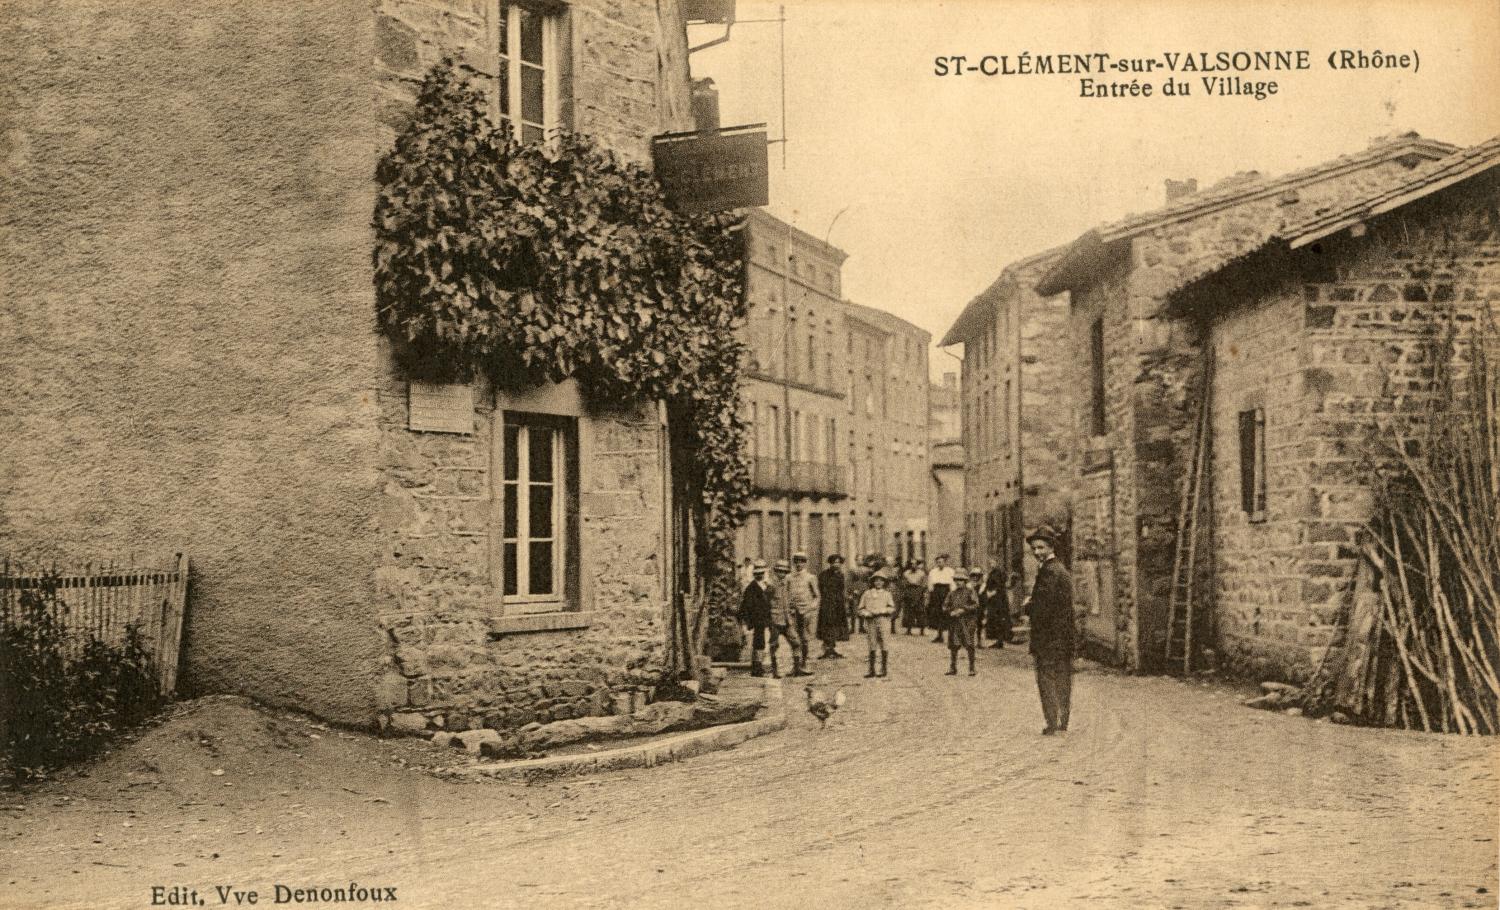 St-Clément-sur-Valsonne (Rhône). - Entrée du Village